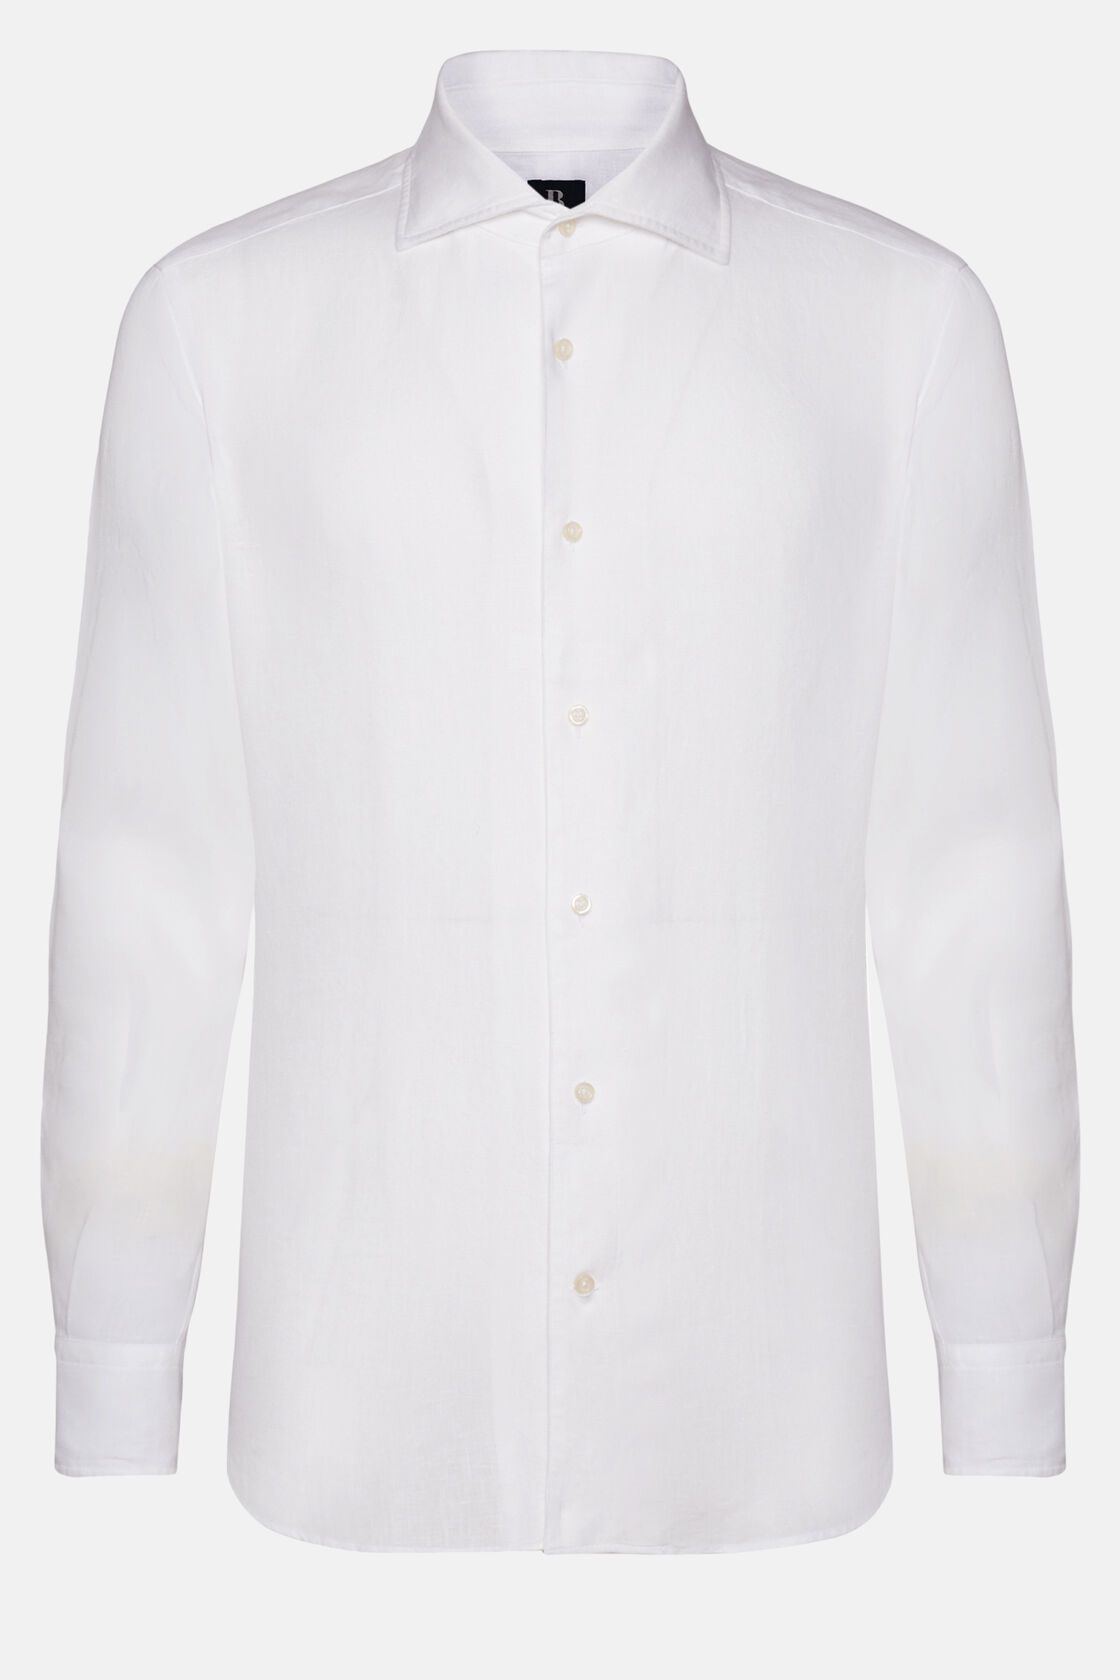 Weißes Hemd Aus Leinen Regular Fit, Weiß, hi-res